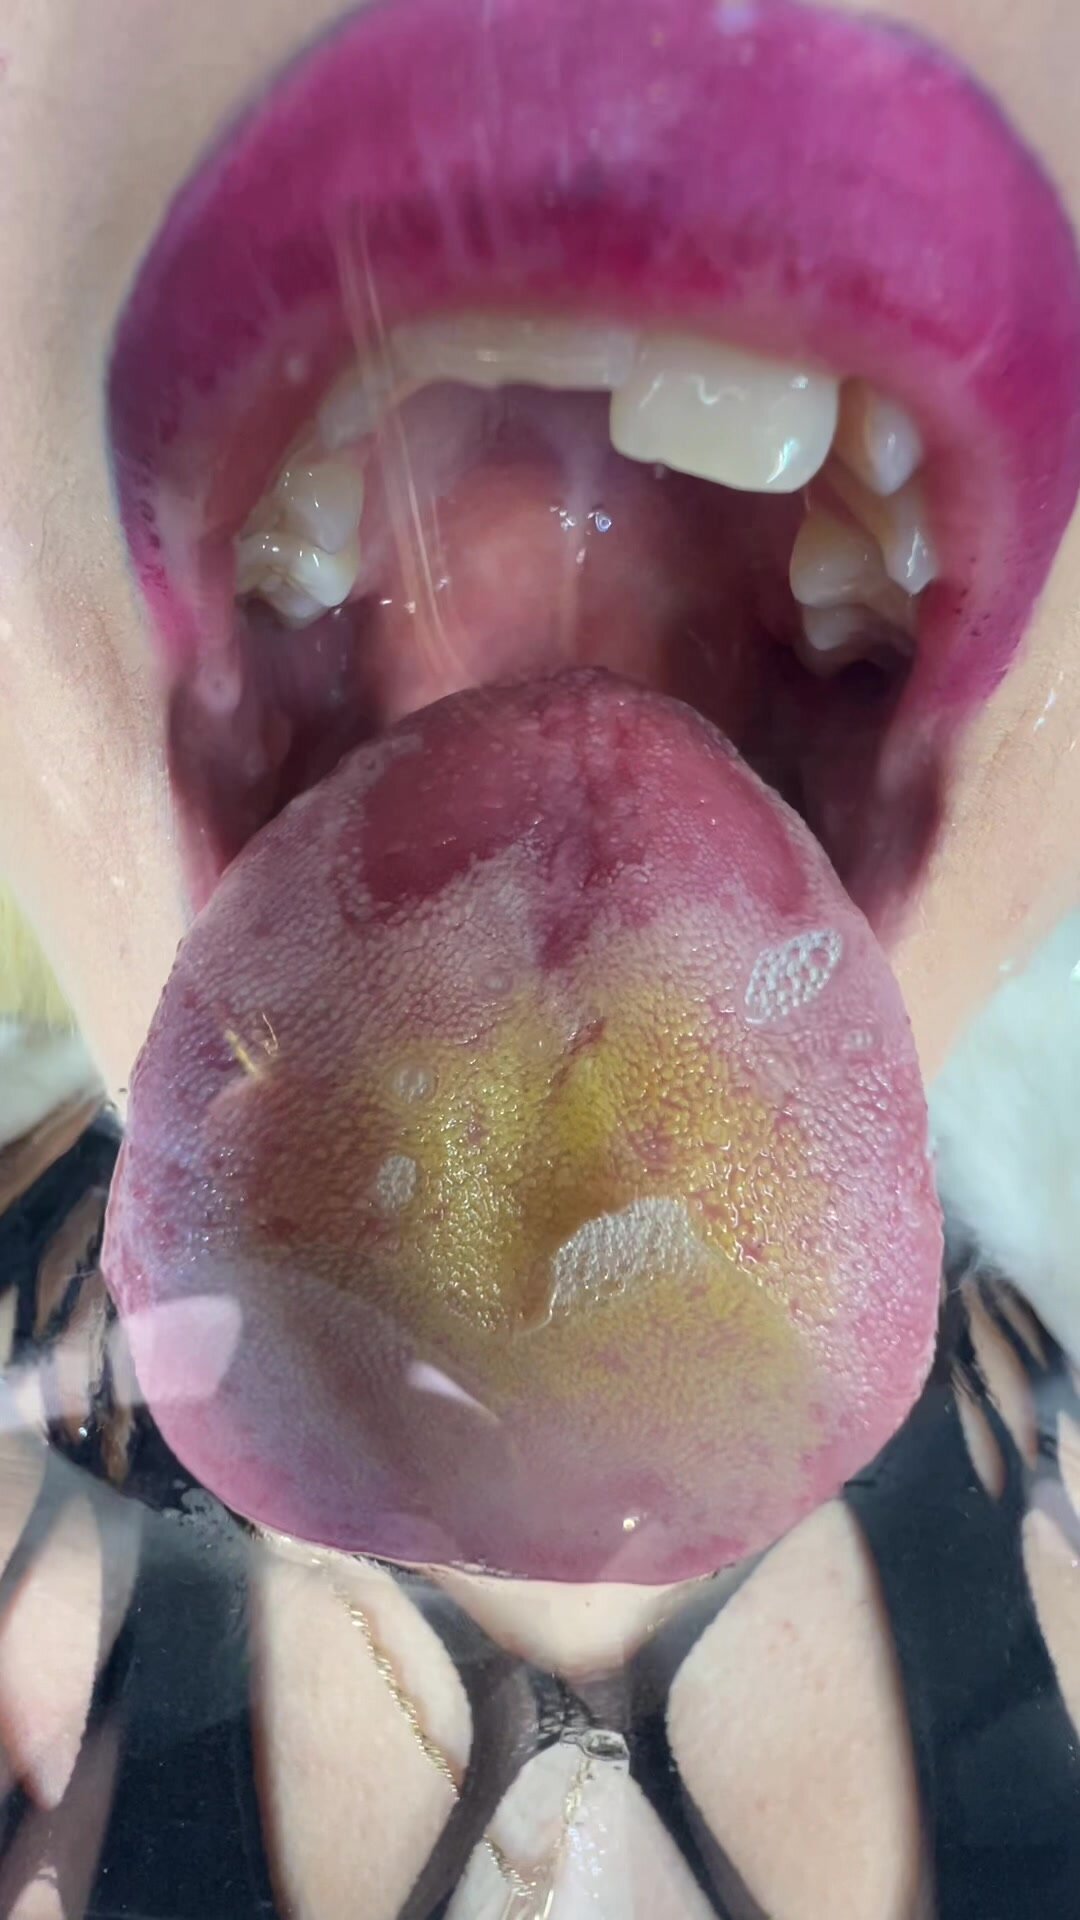 Wet big tongue licking face POV